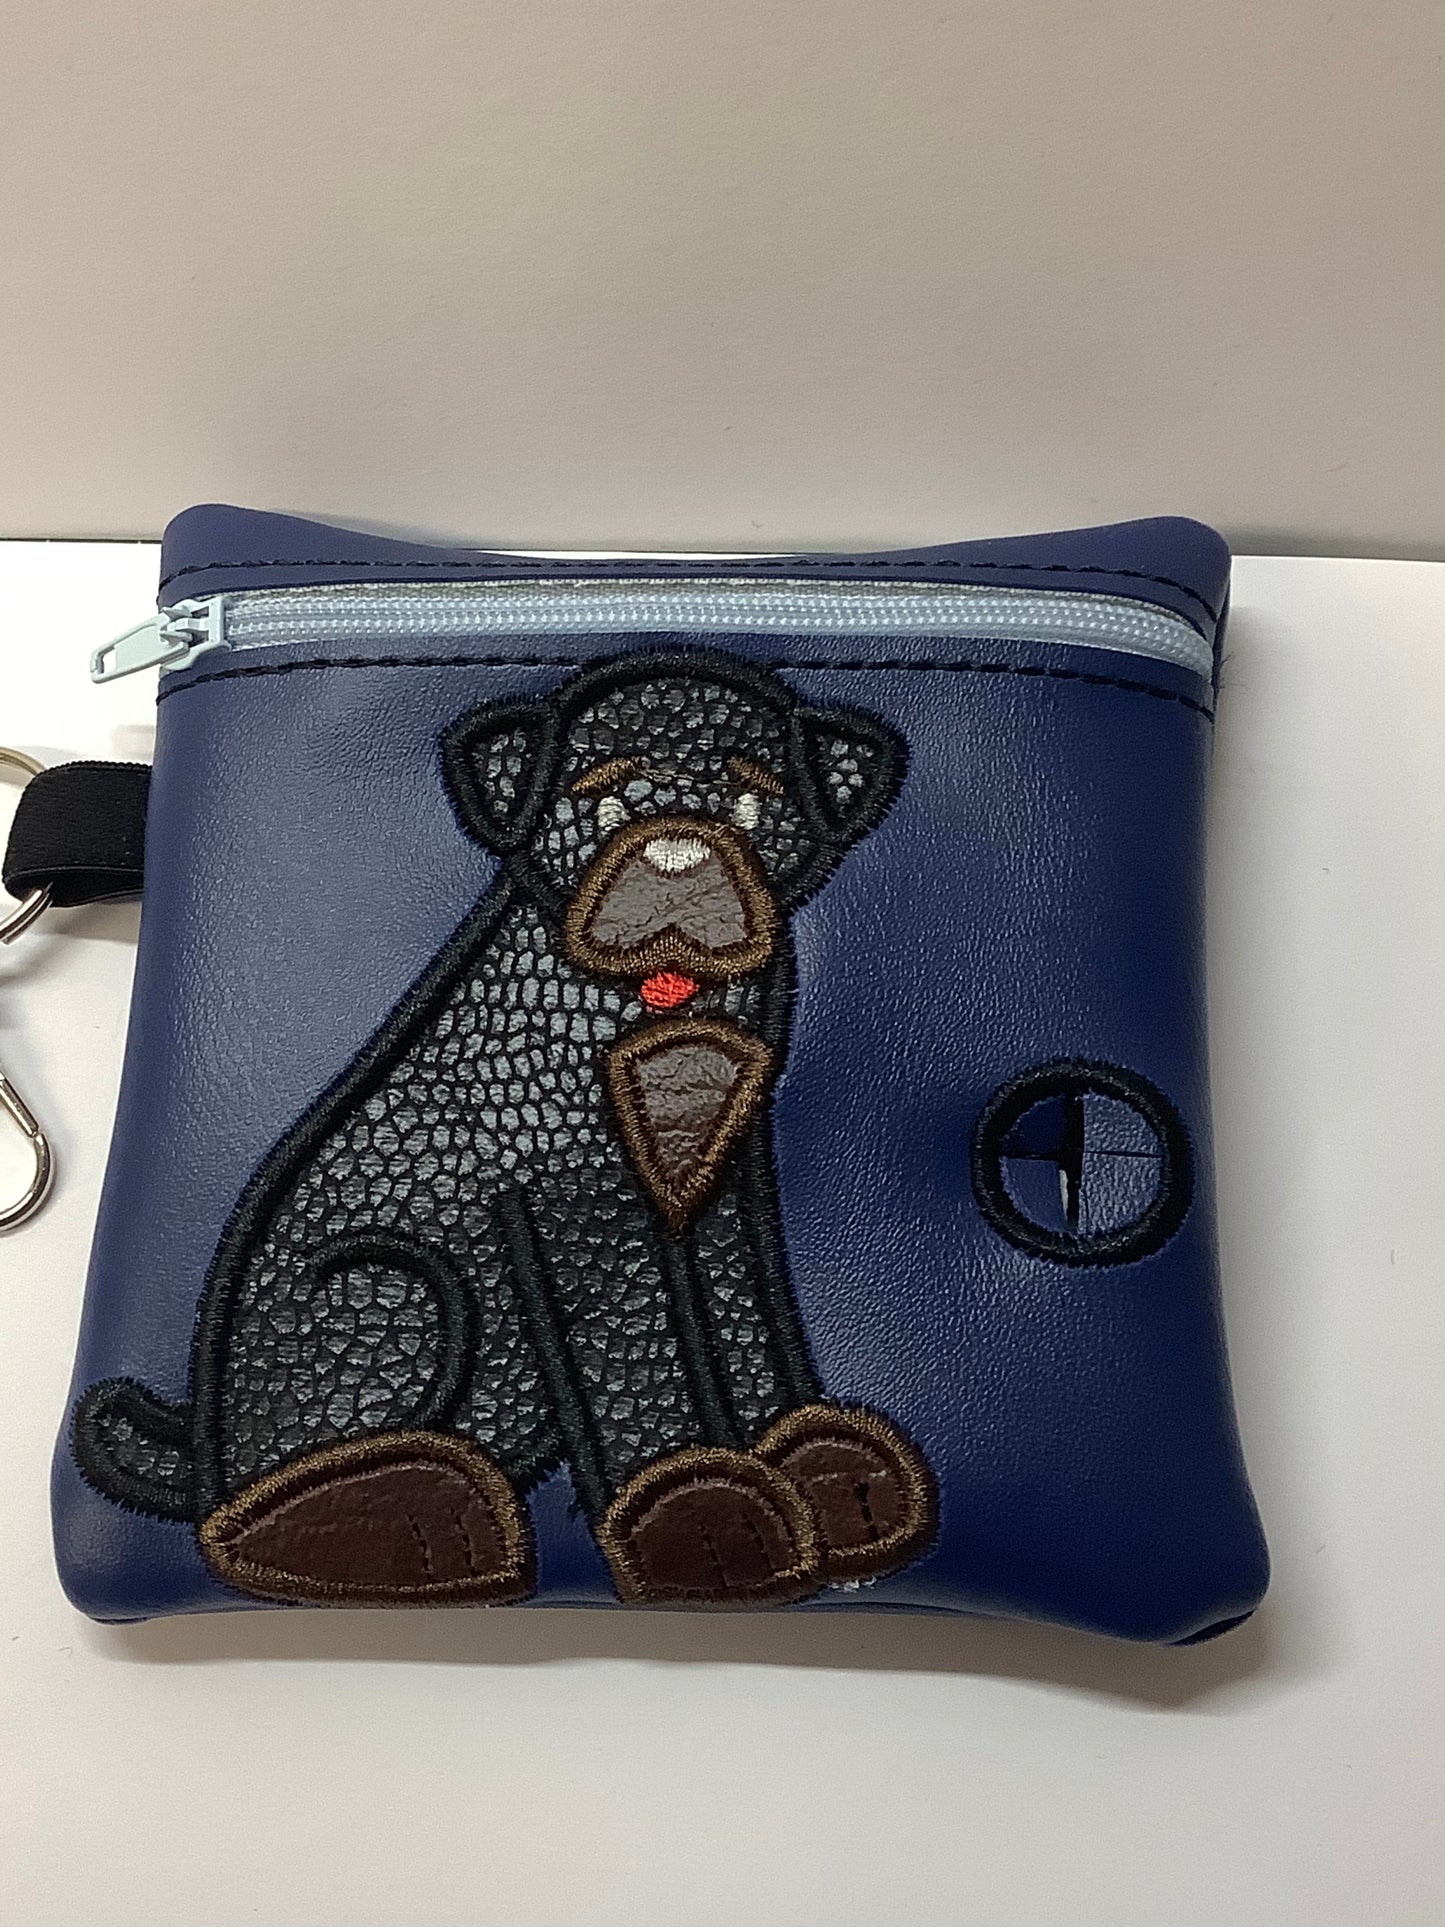 Rottweiler on Blue Embroidered poo bag dispenser